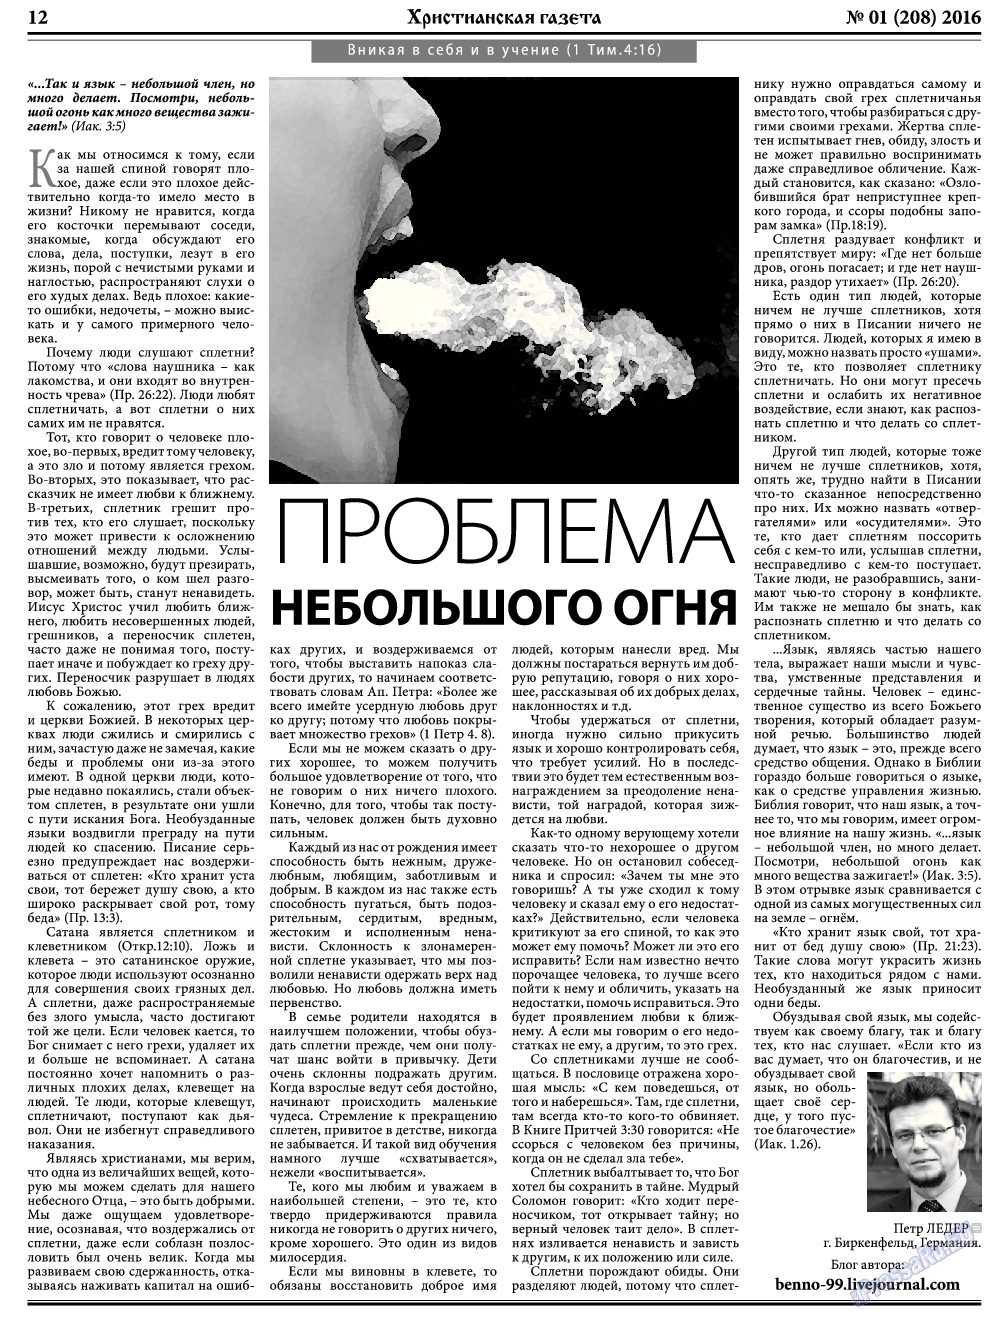 Христианская газета, газета. 2016 №1 стр.12